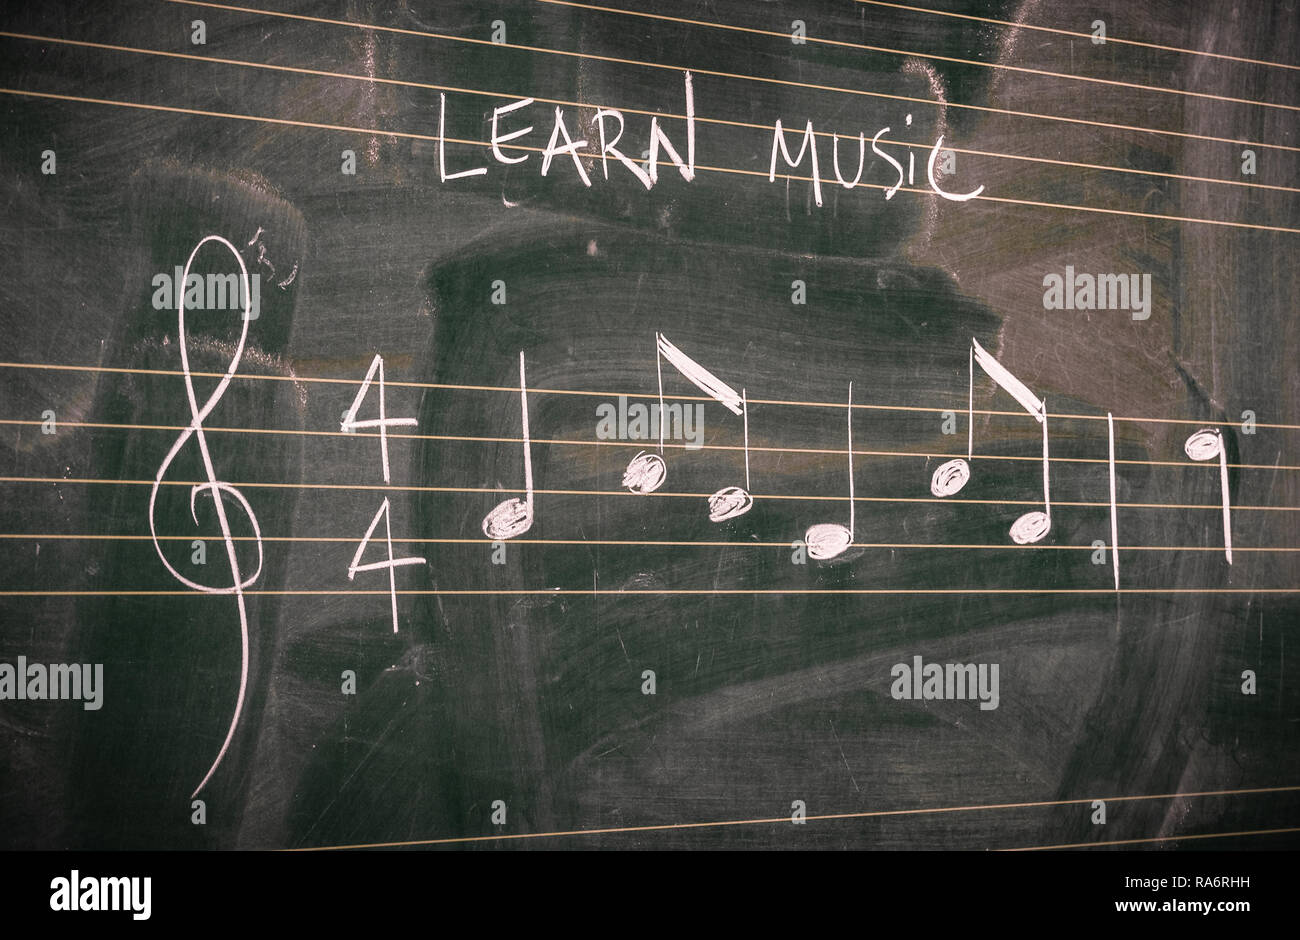 La musique aléatoire de notes écrites à la craie blanche sur un tableau noir. Apprendre ou enseigner la musique des concepts. Banque D'Images